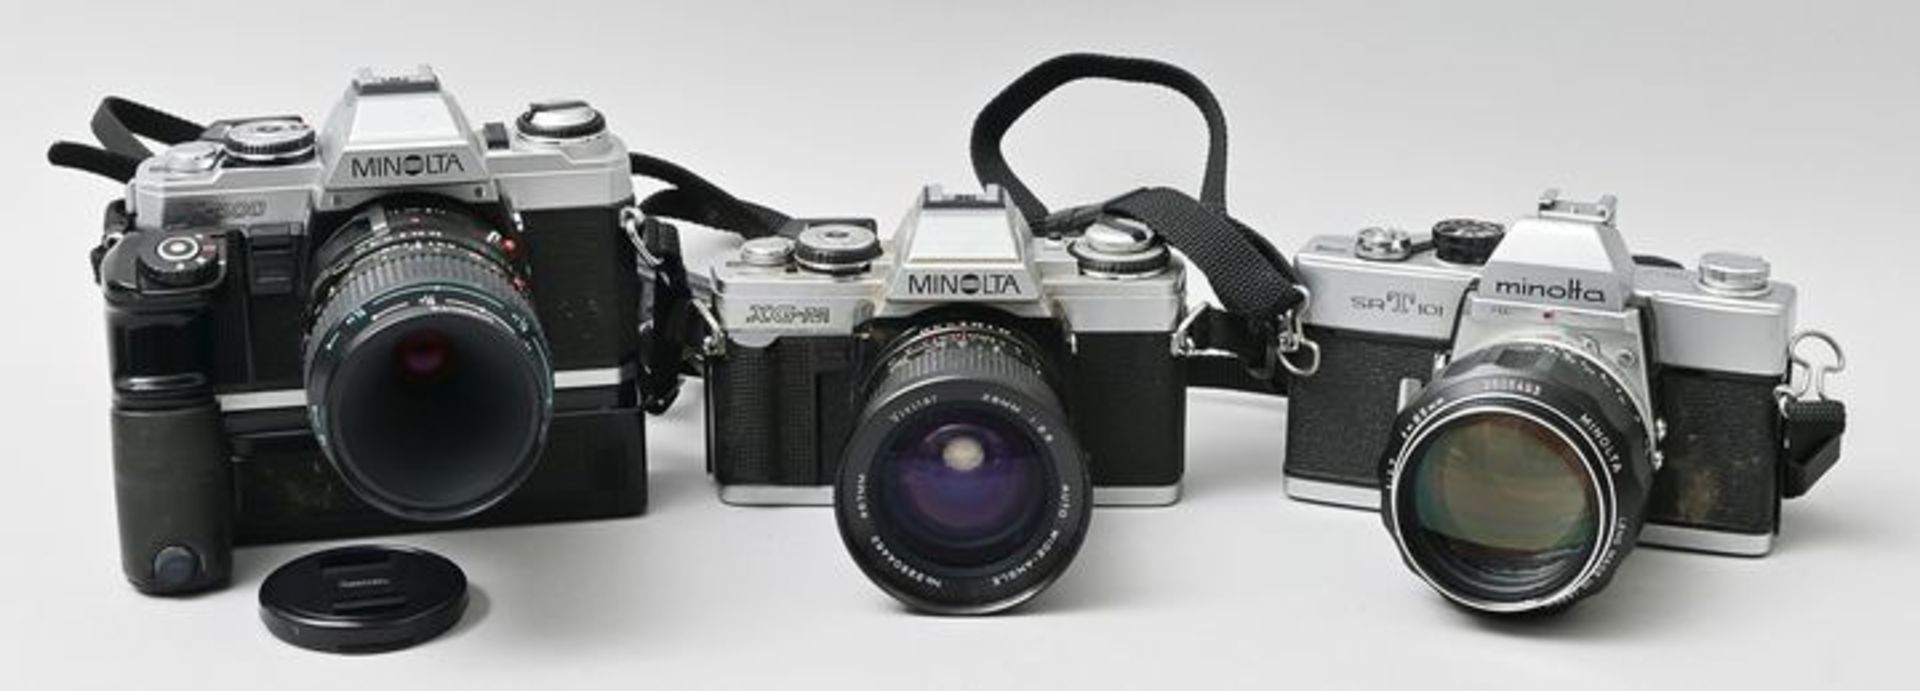 Drei Minolta-Spiegelreflexkameras/ cameras